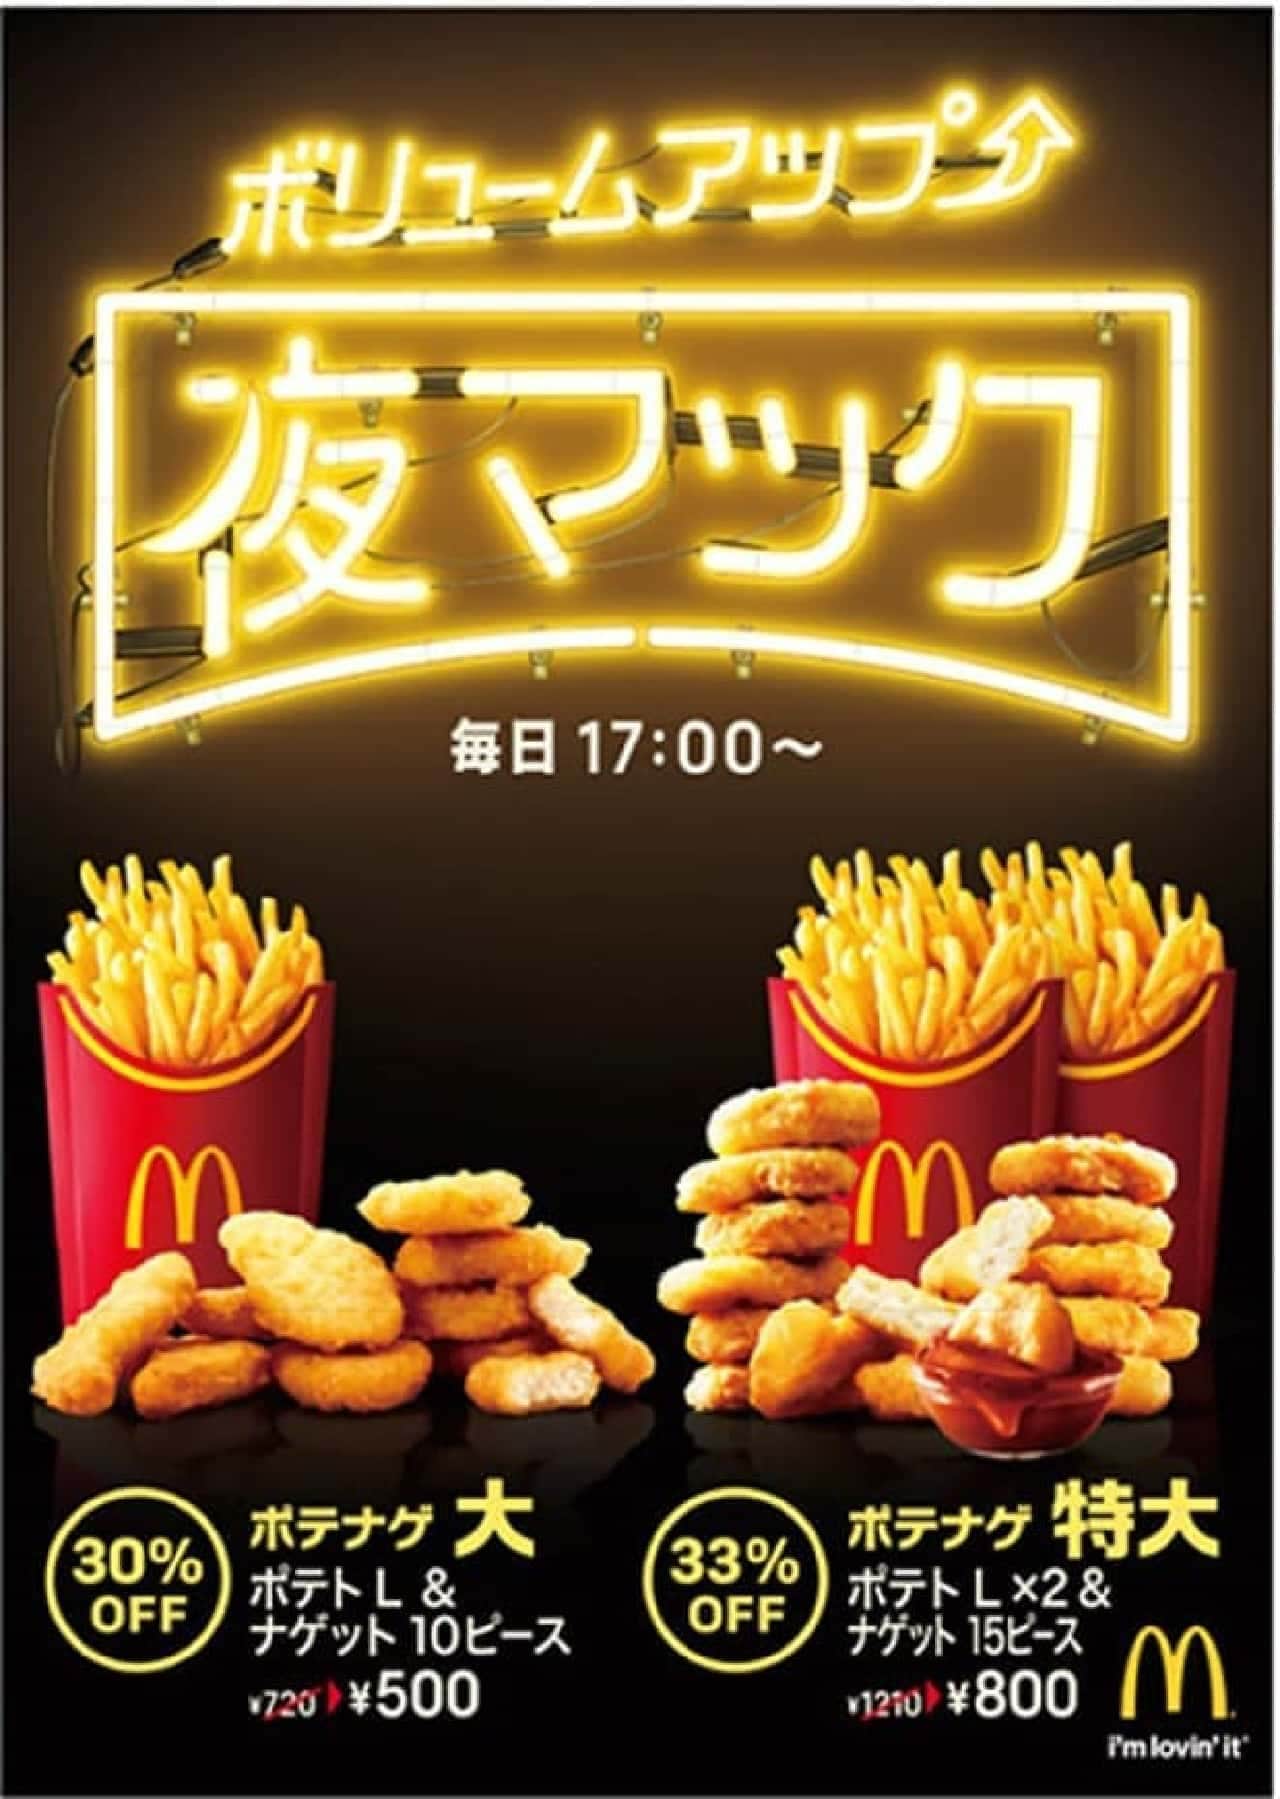 McDonald's new menu